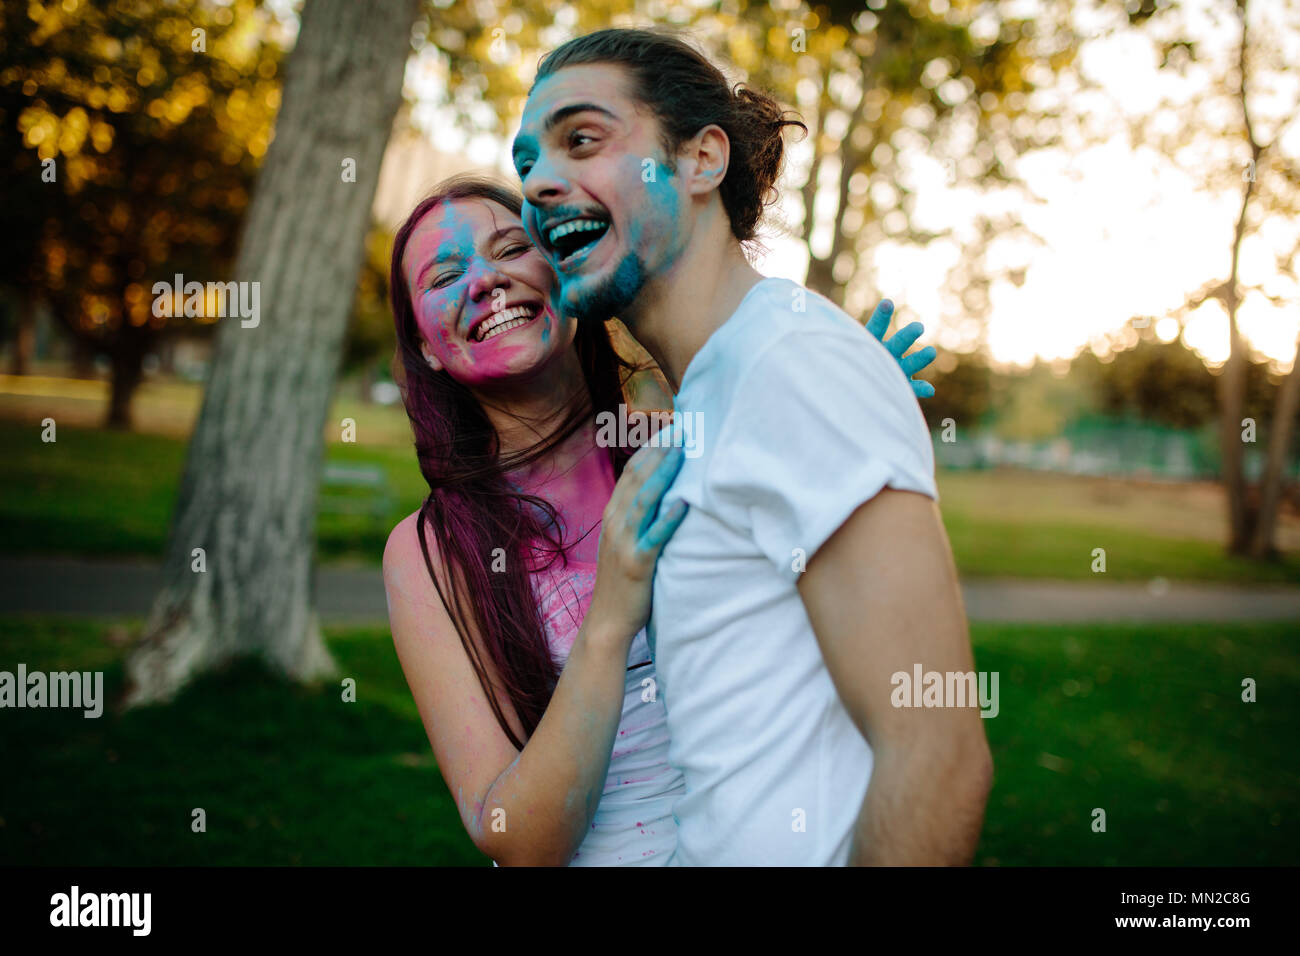 Smiling young couple avec enduit de poudre de couleur sur leurs visages. Cheerful man et woman festival de couleurs en plein air au parc. Banque D'Images